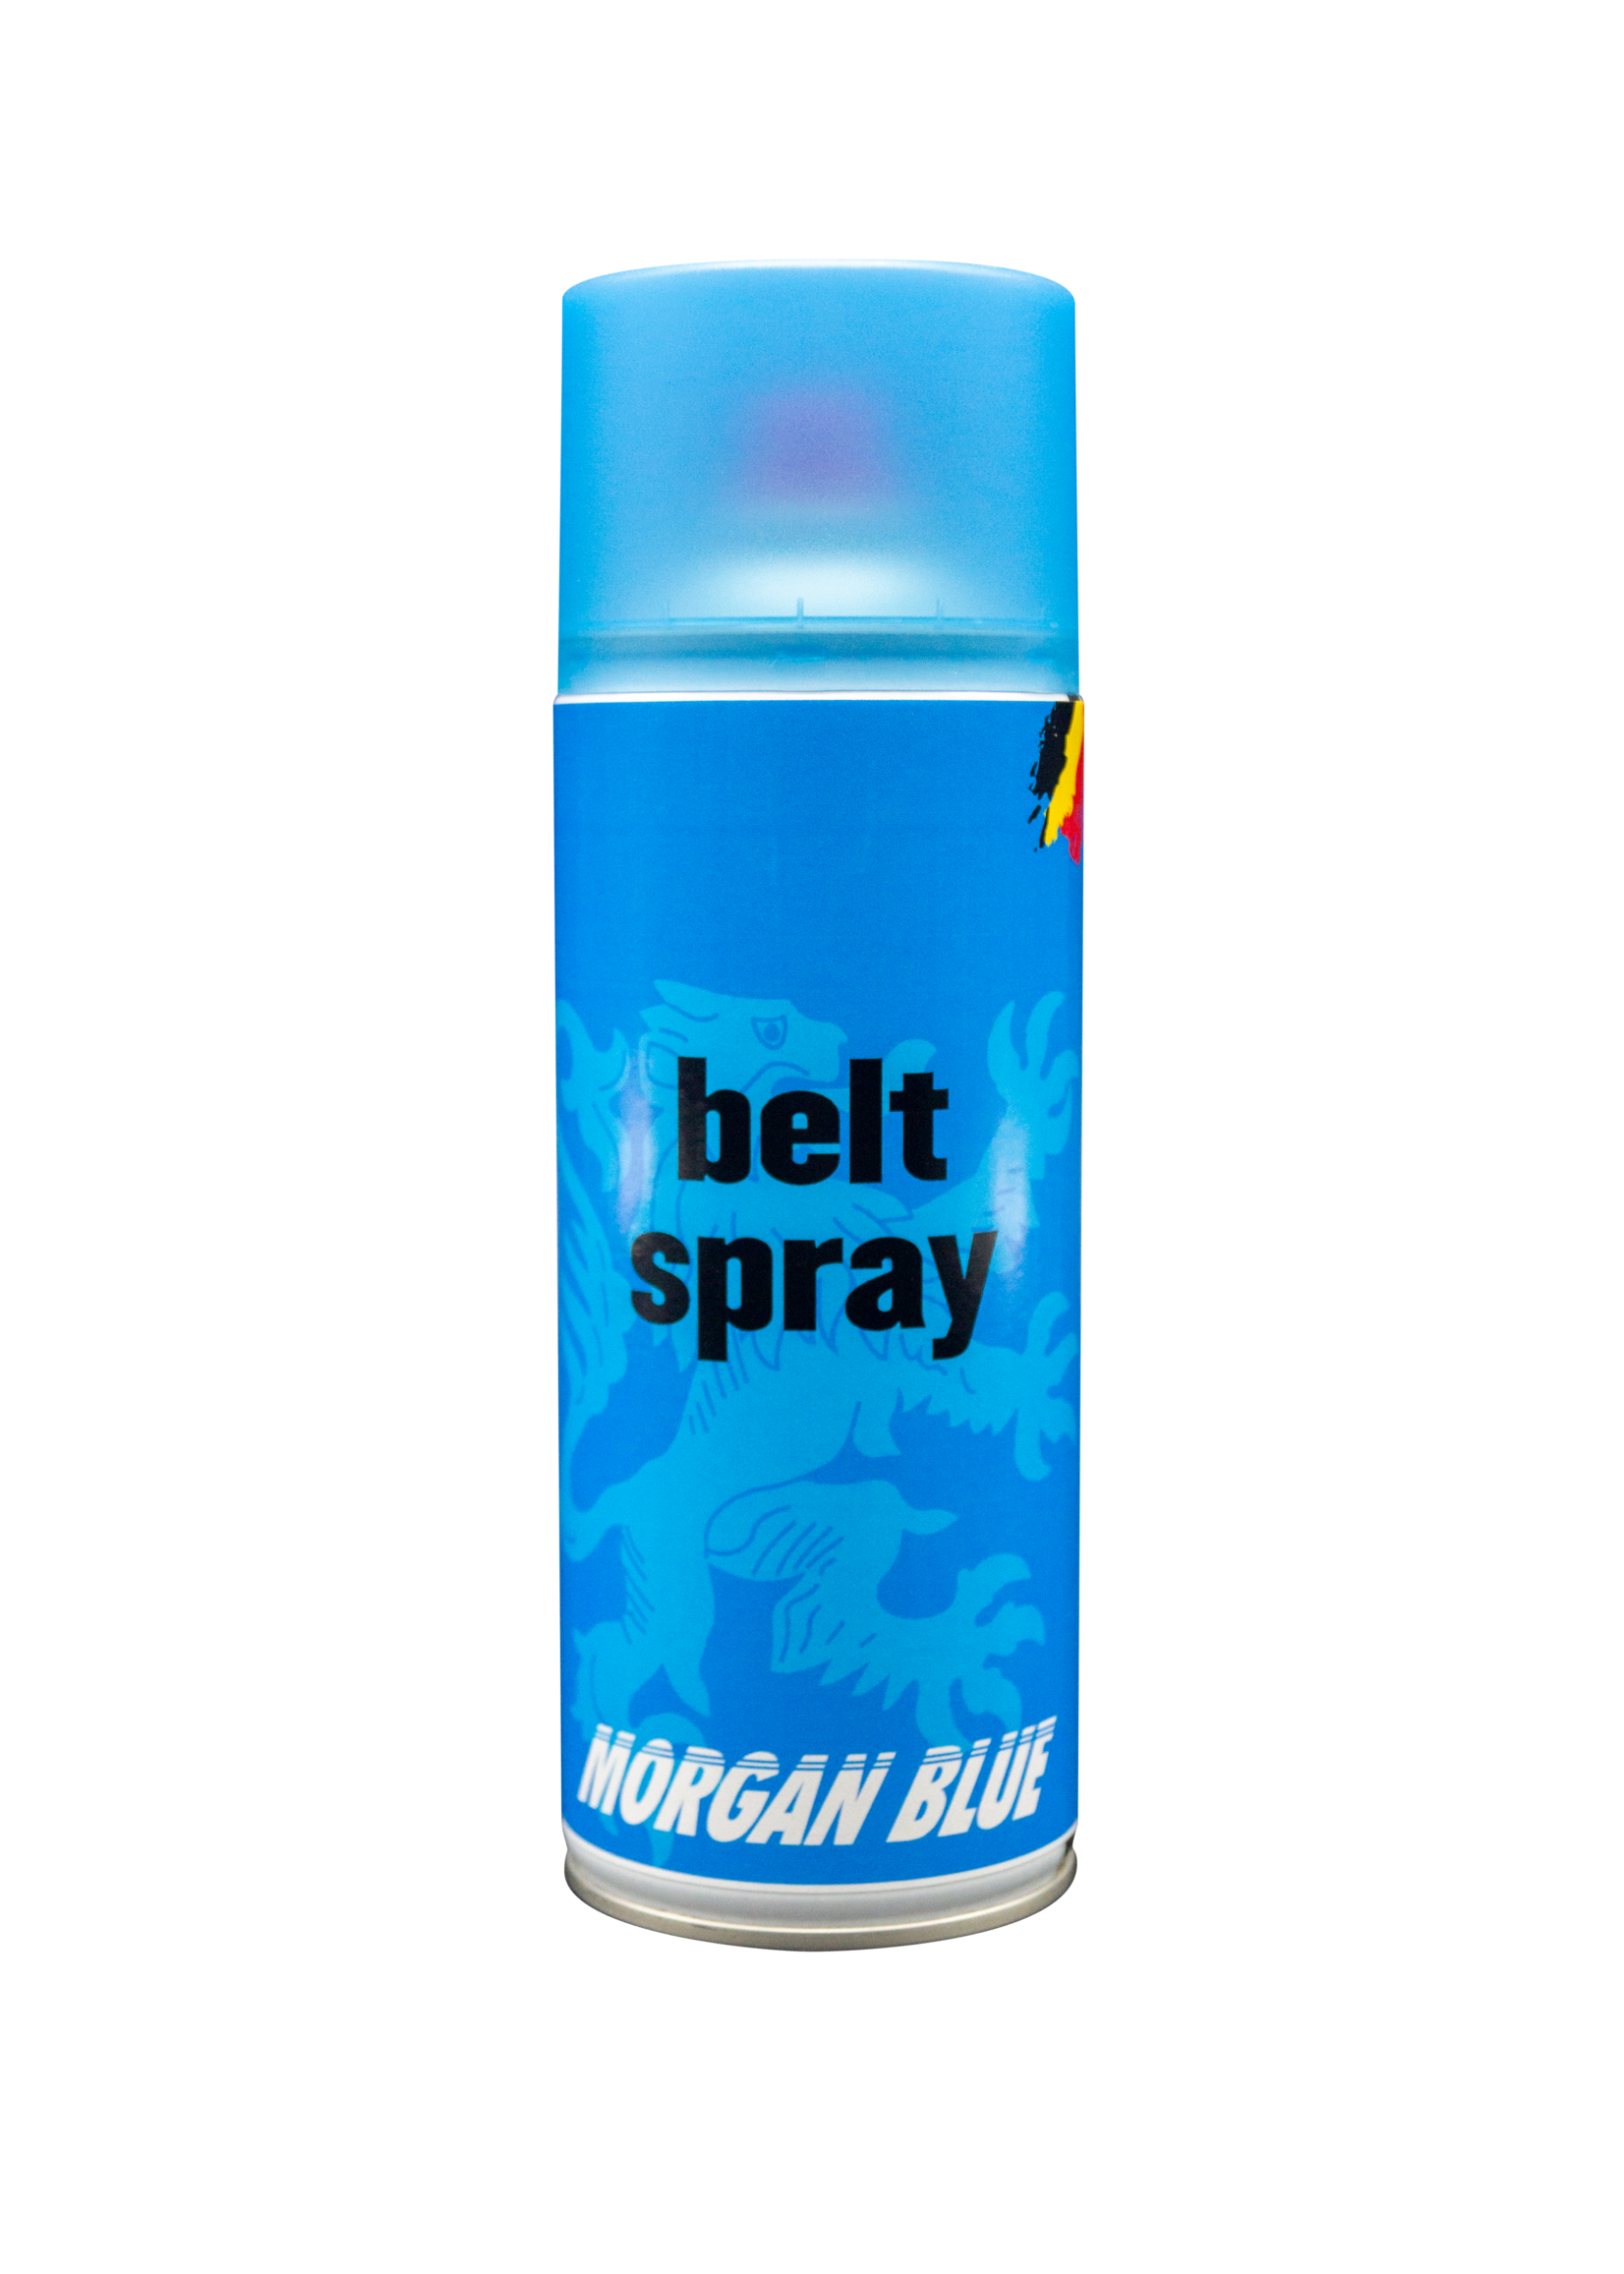 Morgan Blue Beltspray